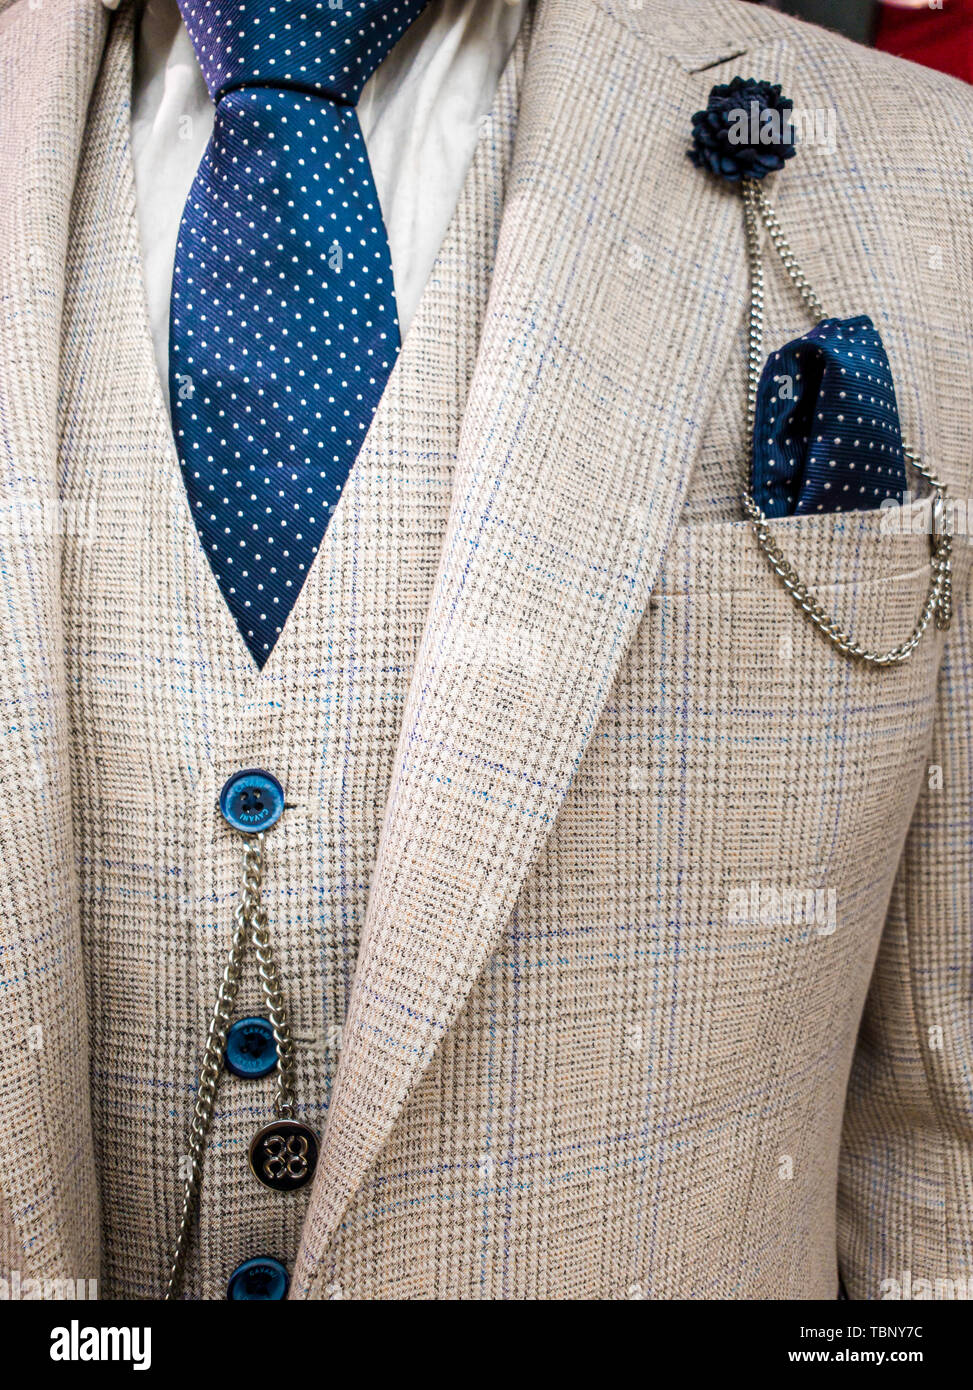 Dernières tendances en costume, chemise et cravate blanche - combinaison costume et cravate - Cravate Marine Banque D'Images